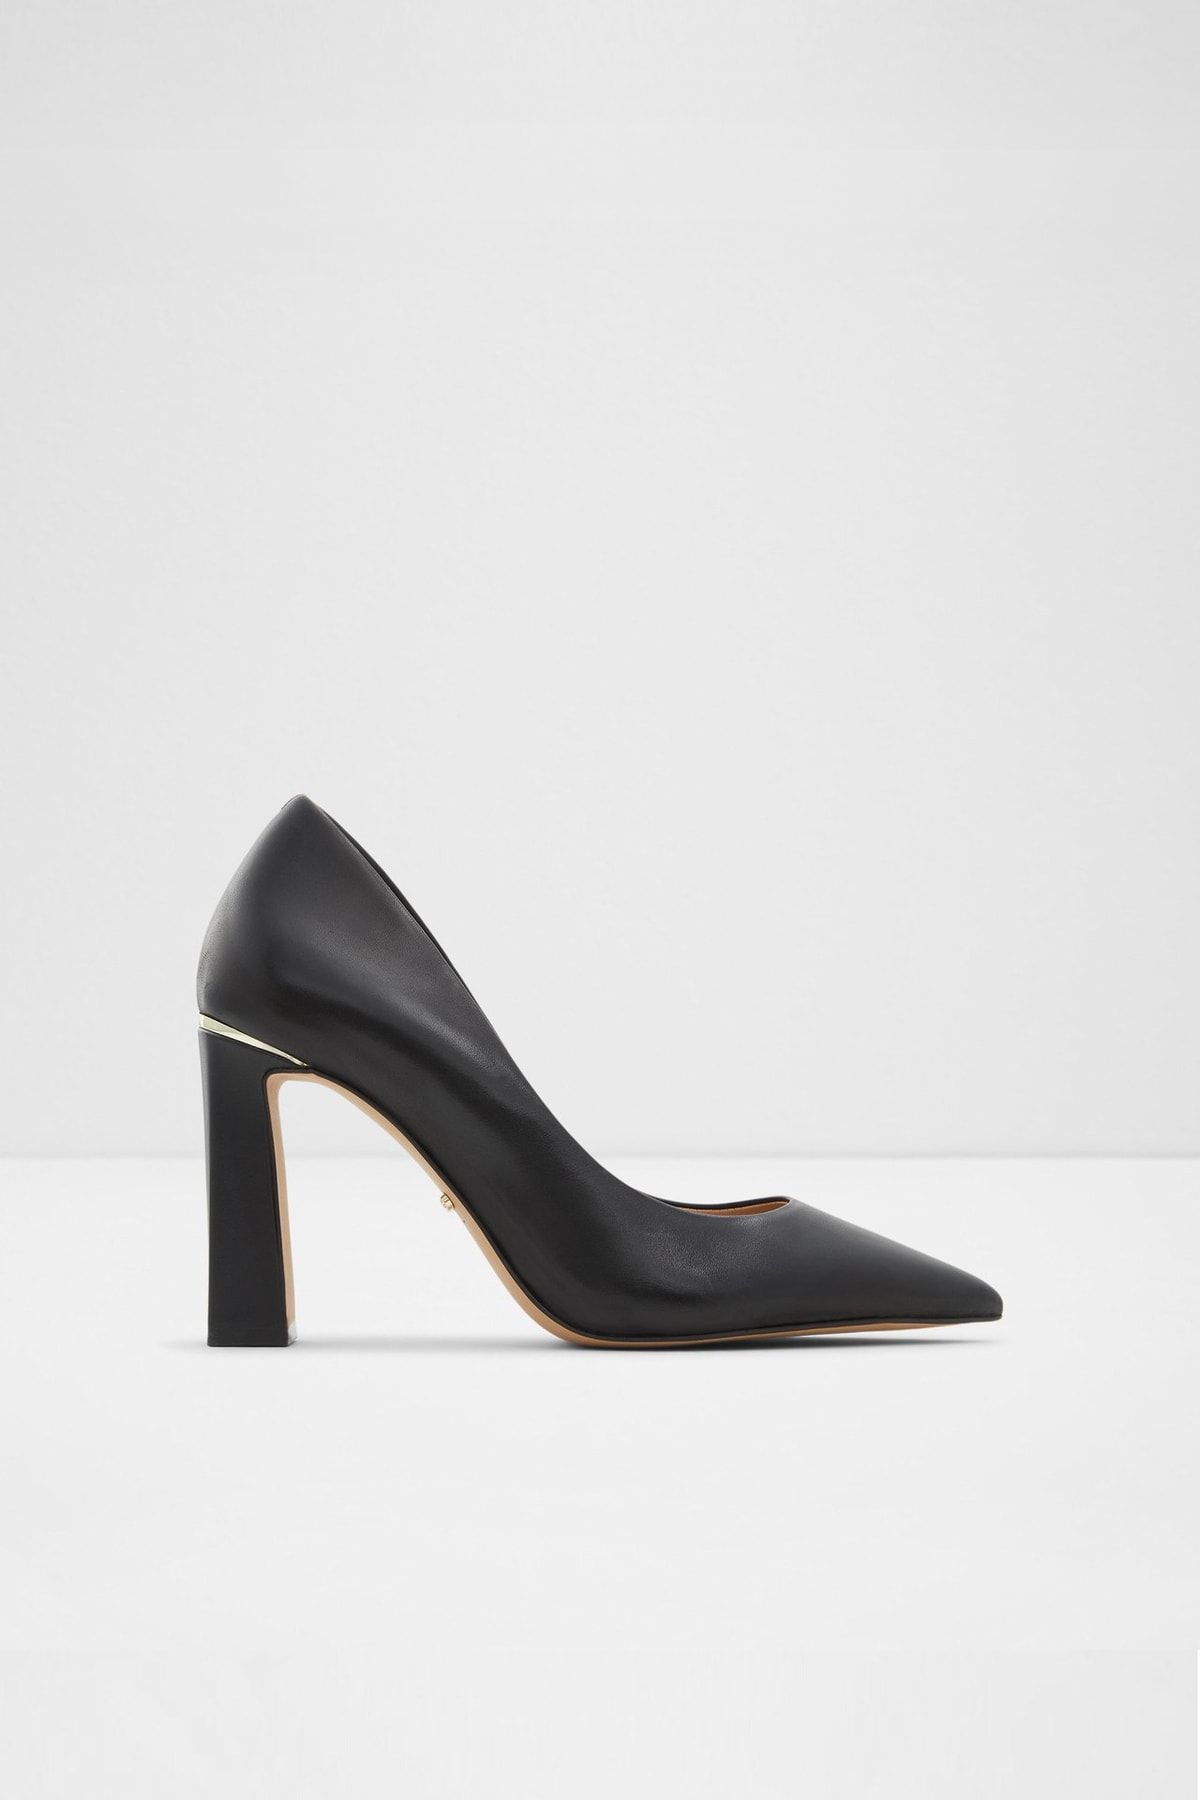 Aldo Seırıth - Siyah Kadın Topuklu Ayakkabı